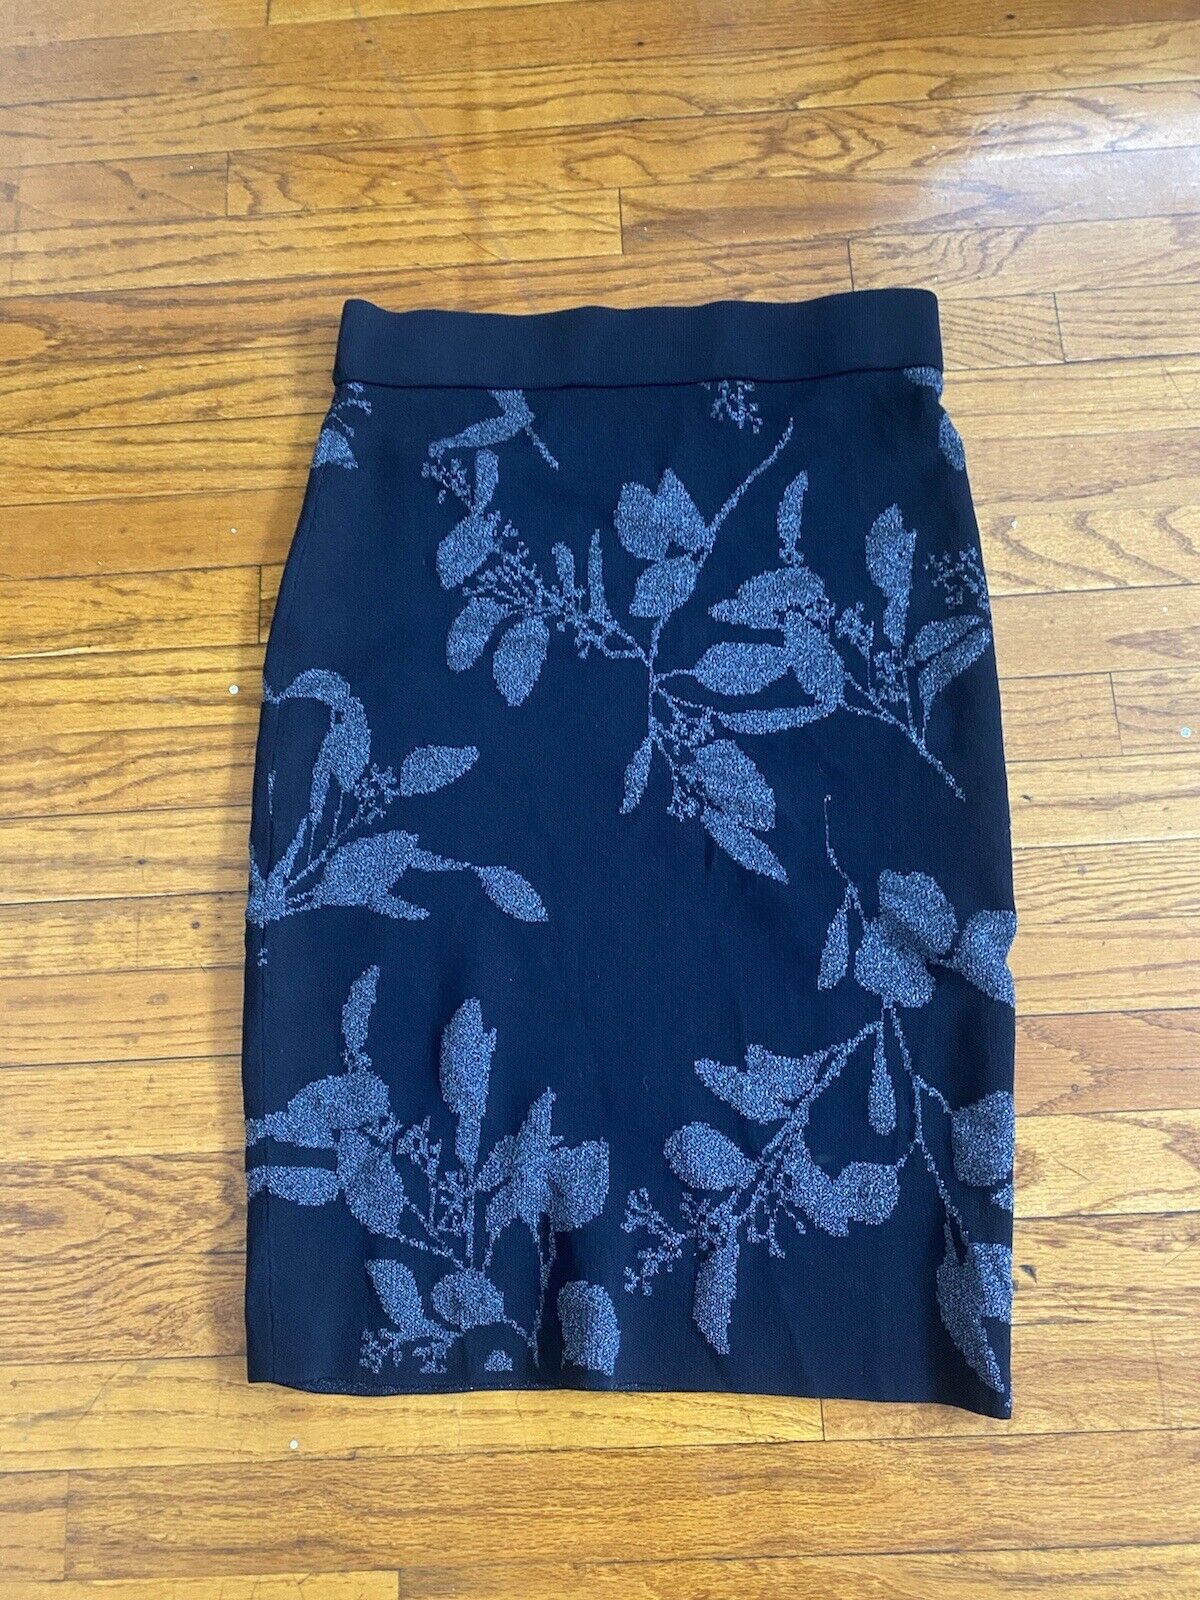 Black Knit Midi Skirt - Unbranded - Women’s Medium